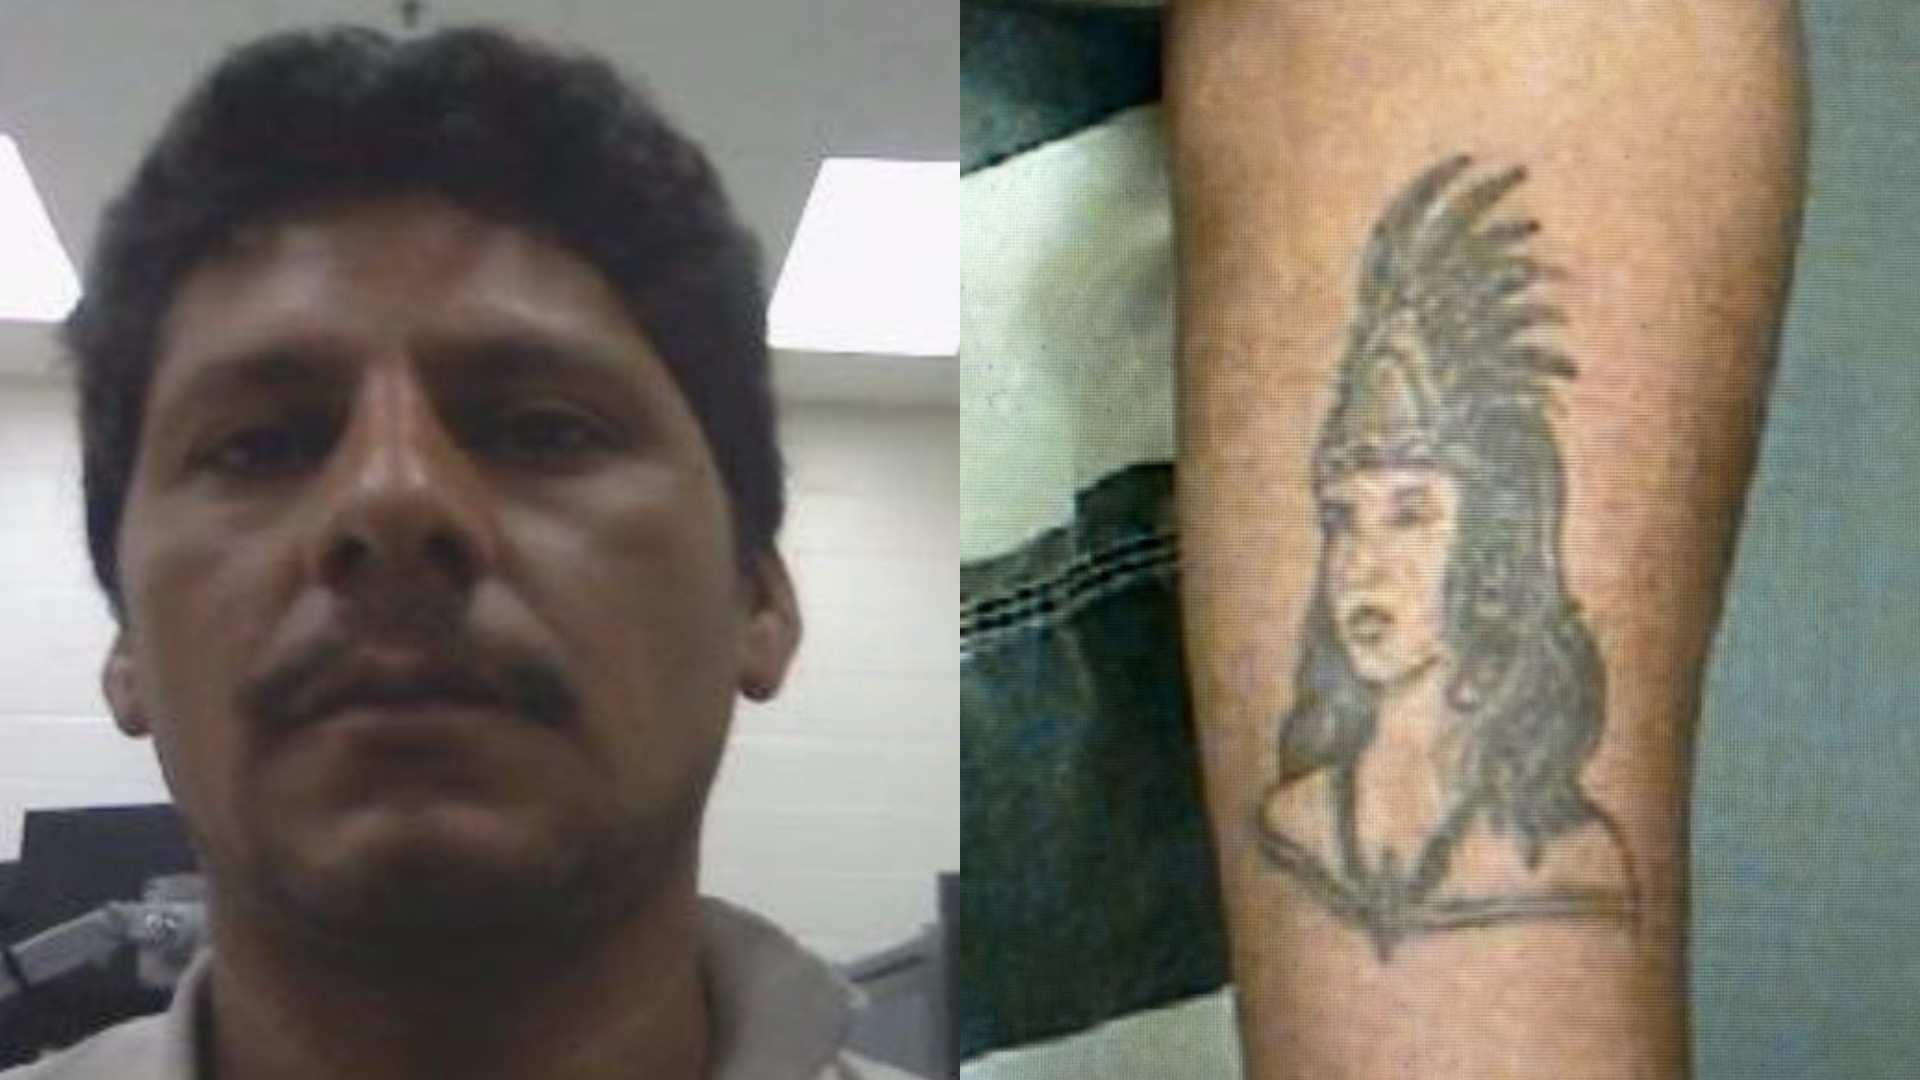 El FBI difundió imágenes actualizadas sobre Francisco Oropesa, incluyendo la de un tatuaje que lleva en el brazo. (FBI)